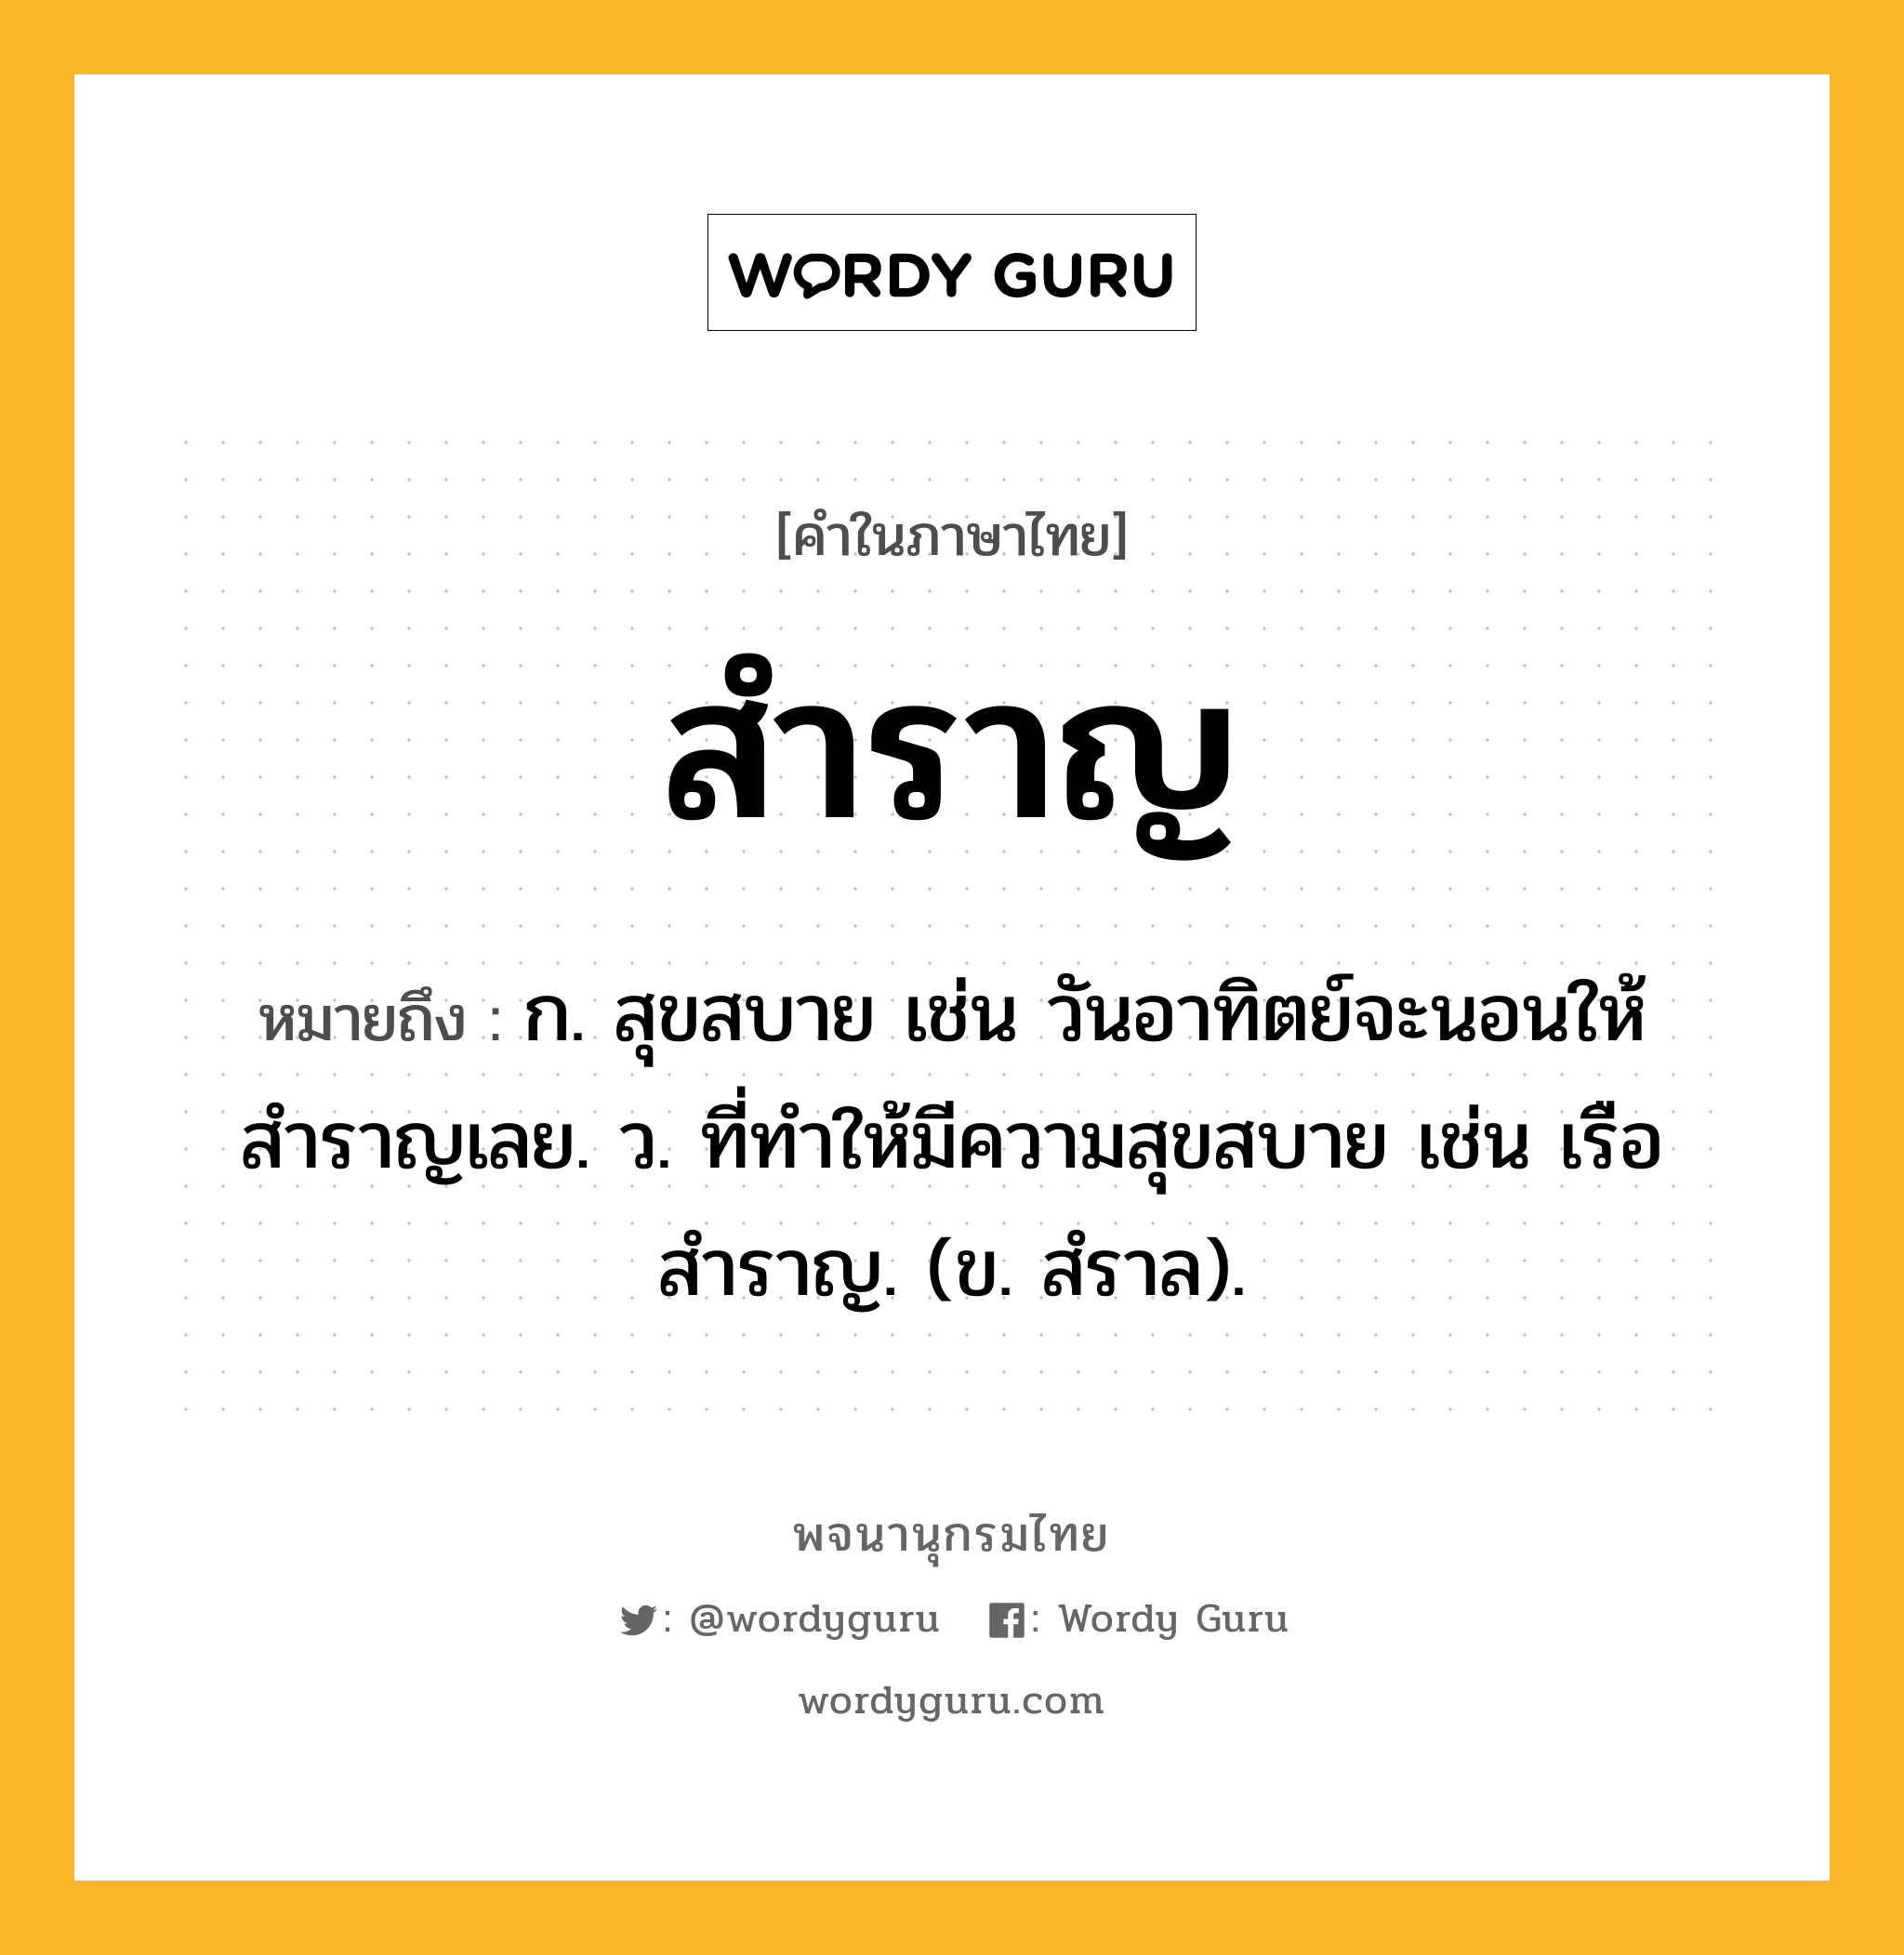 สำราญ ความหมาย หมายถึงอะไร?, คำในภาษาไทย สำราญ หมายถึง ก. สุขสบาย เช่น วันอาทิตย์จะนอนให้สำราญเลย. ว. ที่ทำให้มีความสุขสบาย เช่น เรือสำราญ. (ข. สํราล).